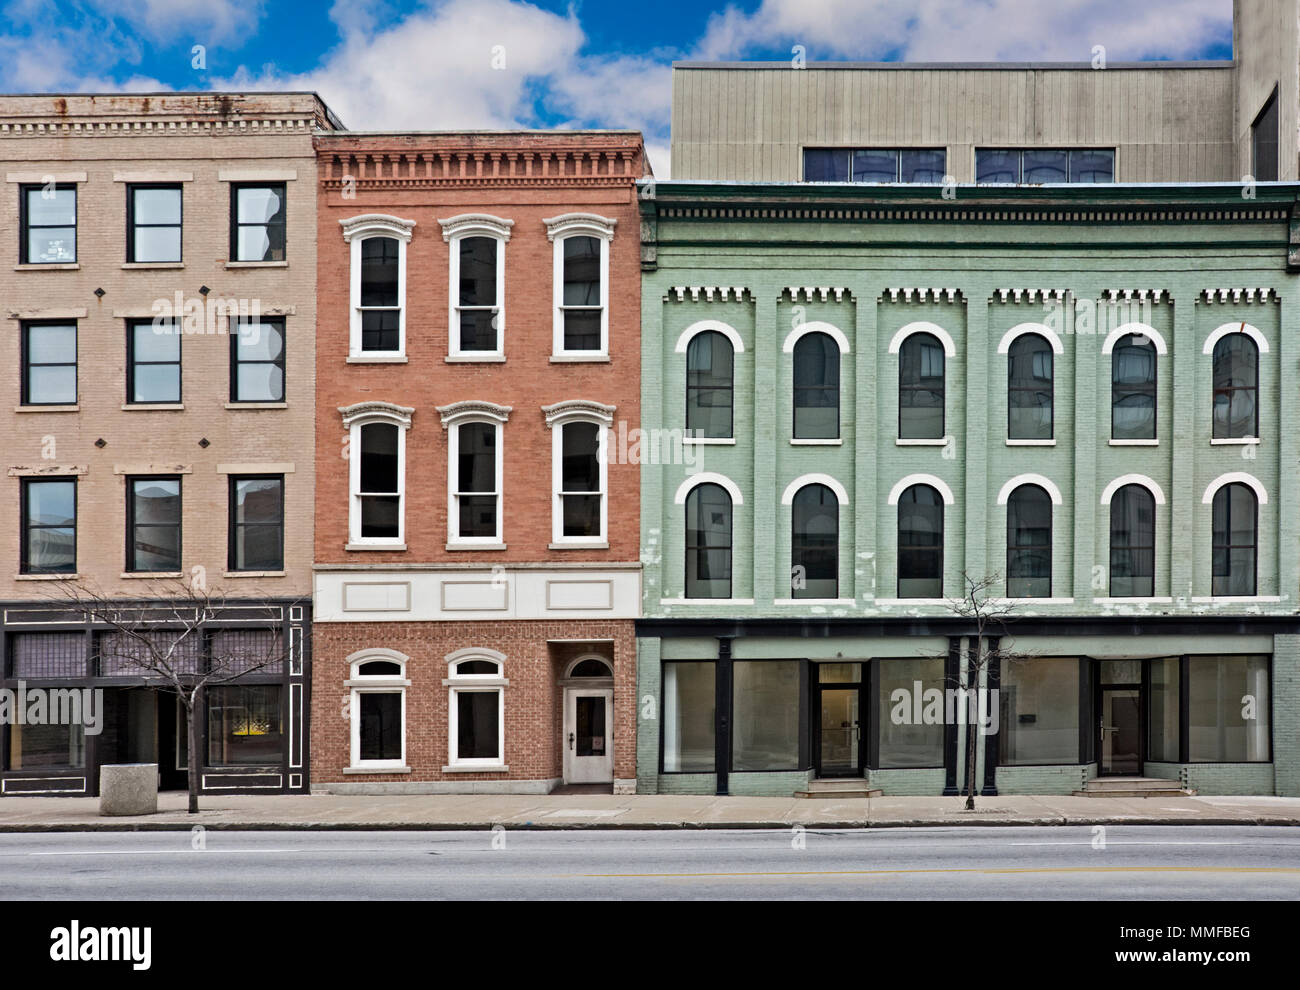 Ein Foto von einem typischen kleinen Stadt Main Street in den Vereinigten Staaten von Amerika. Mit alten Backsteinbauten mit Geschäften und Restaurants. Decora Stockfoto